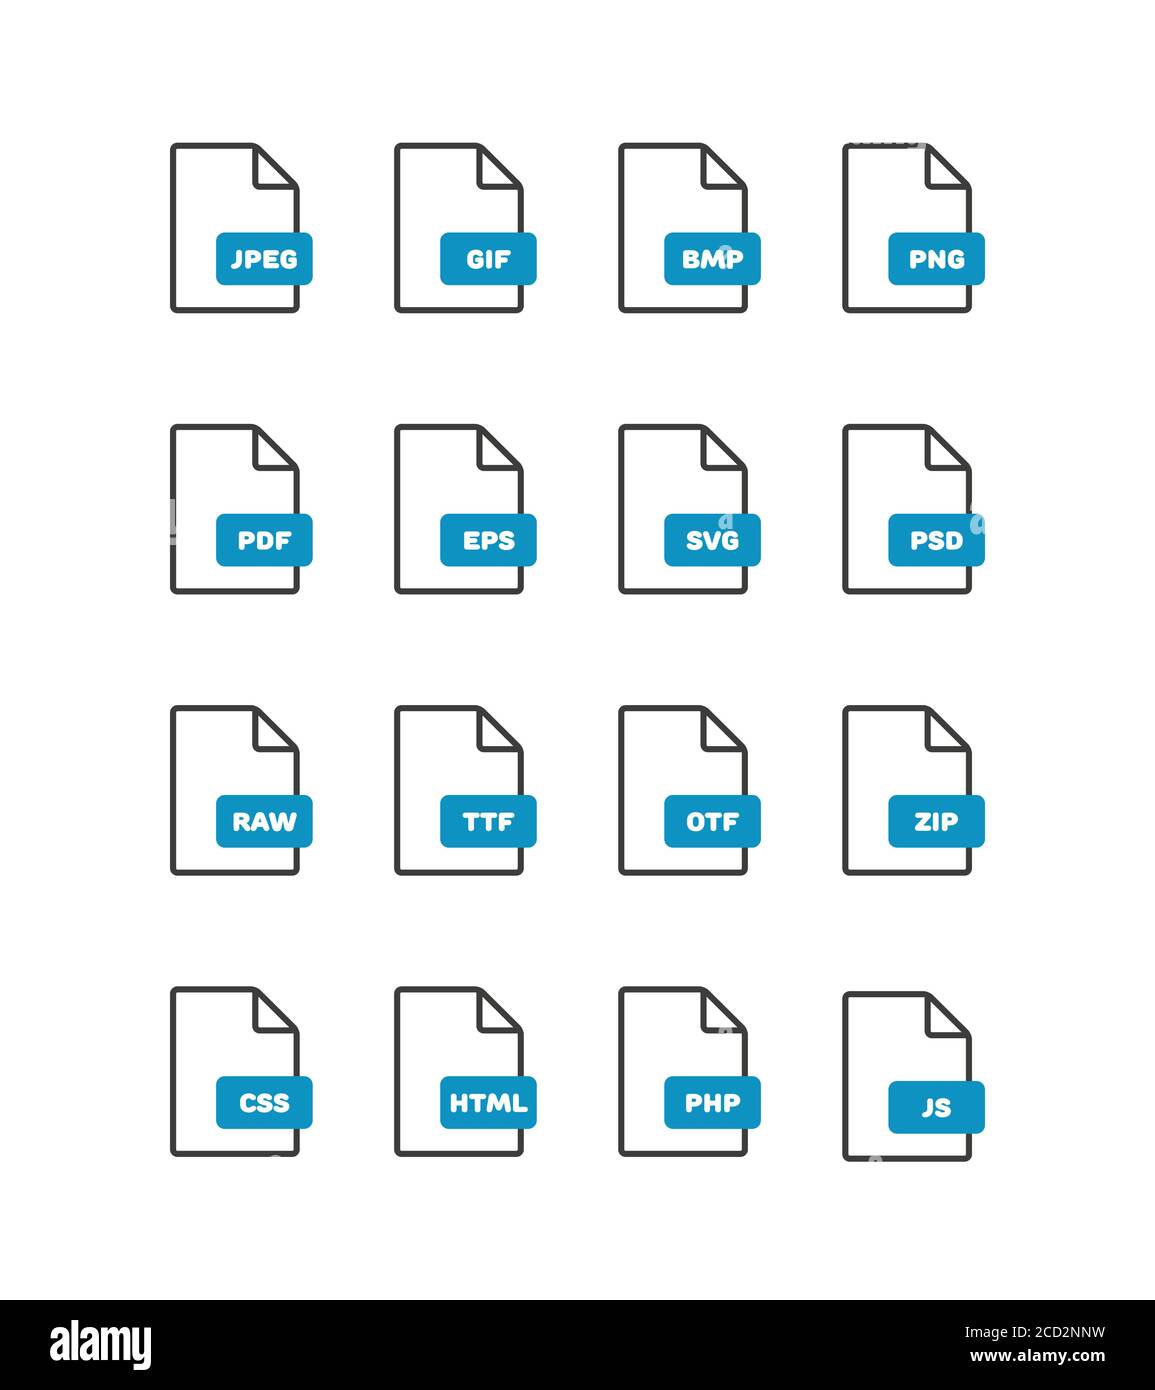 Set di icone di formato di file vettoriali sottili lineari, icone di contorno del documento. Icone del formato file con iscrizioni. Icone delle etichette del formato file per applicazioni Web e mobili Illustrazione Vettoriale